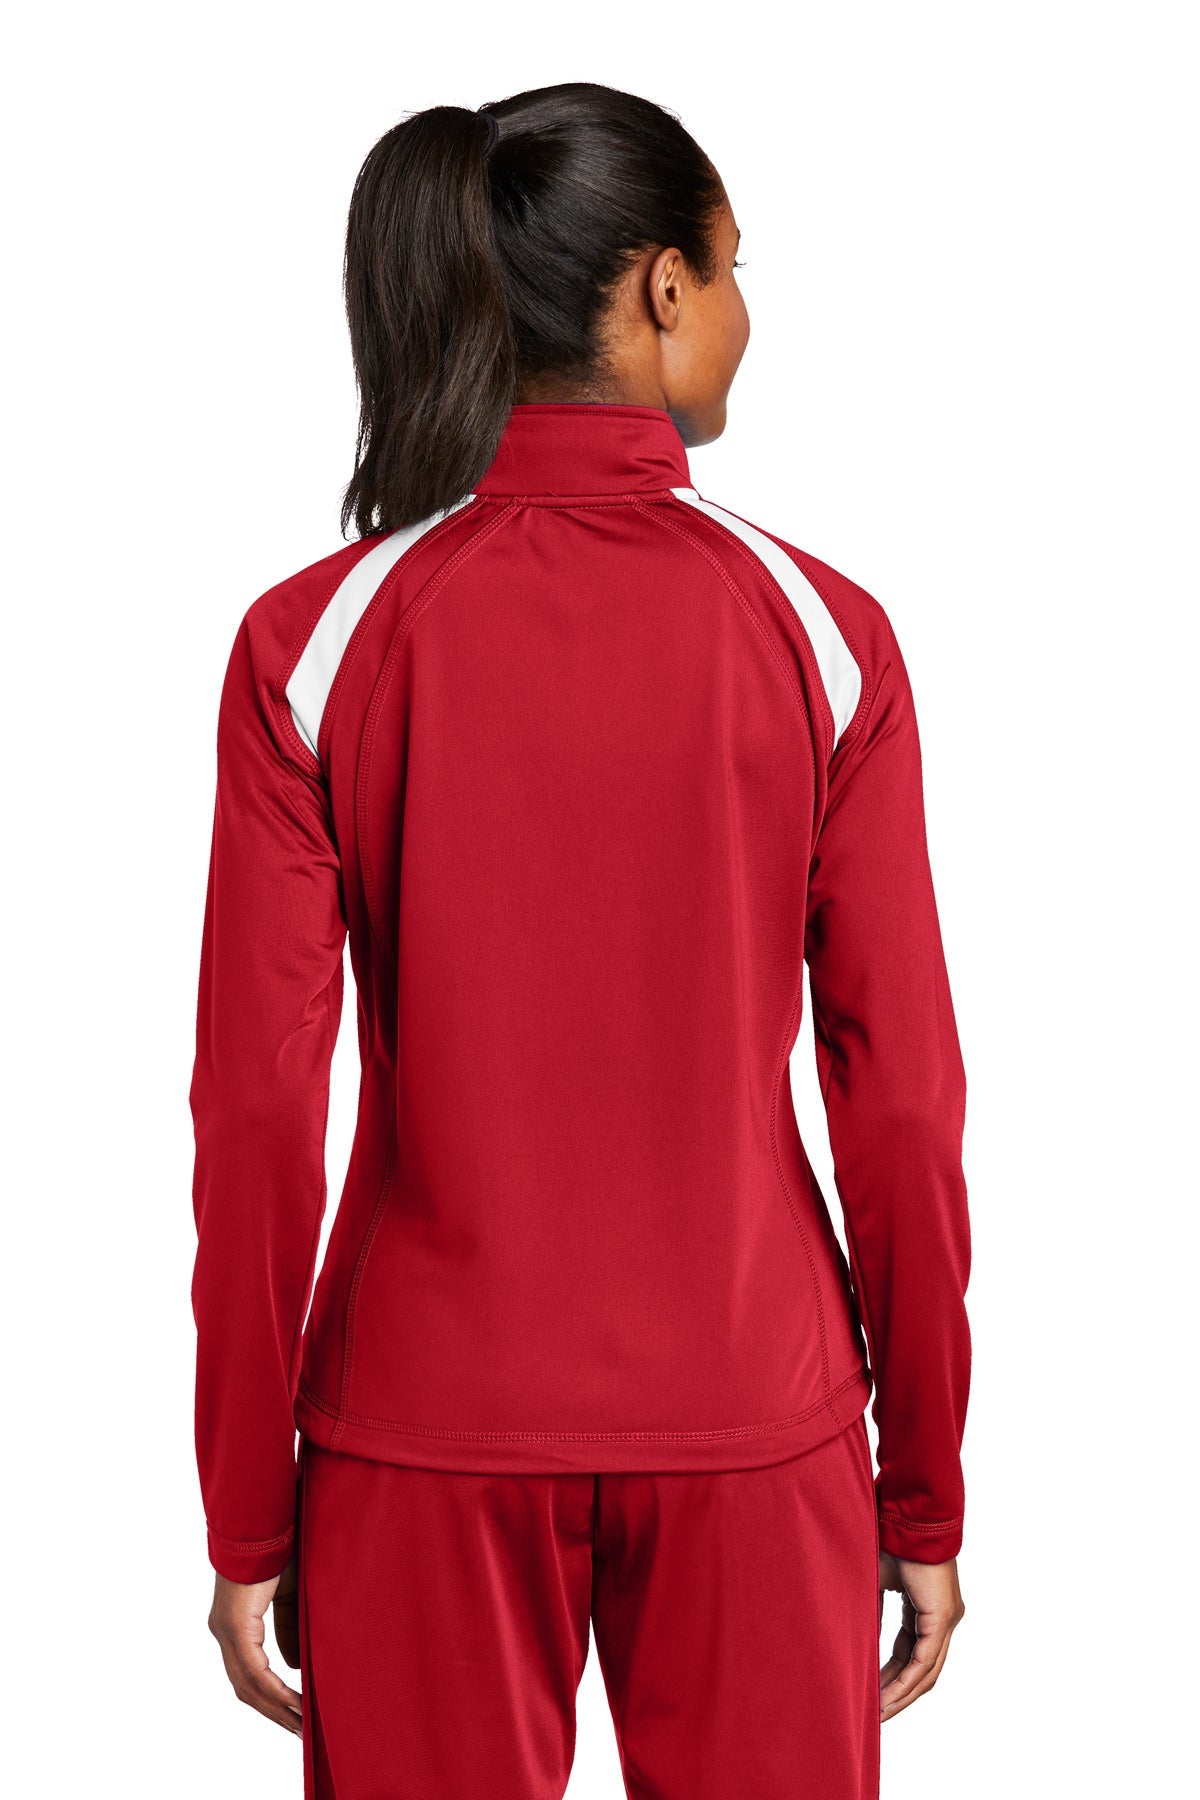 sport-tek_lst90 _true red/white_company_logo_jackets